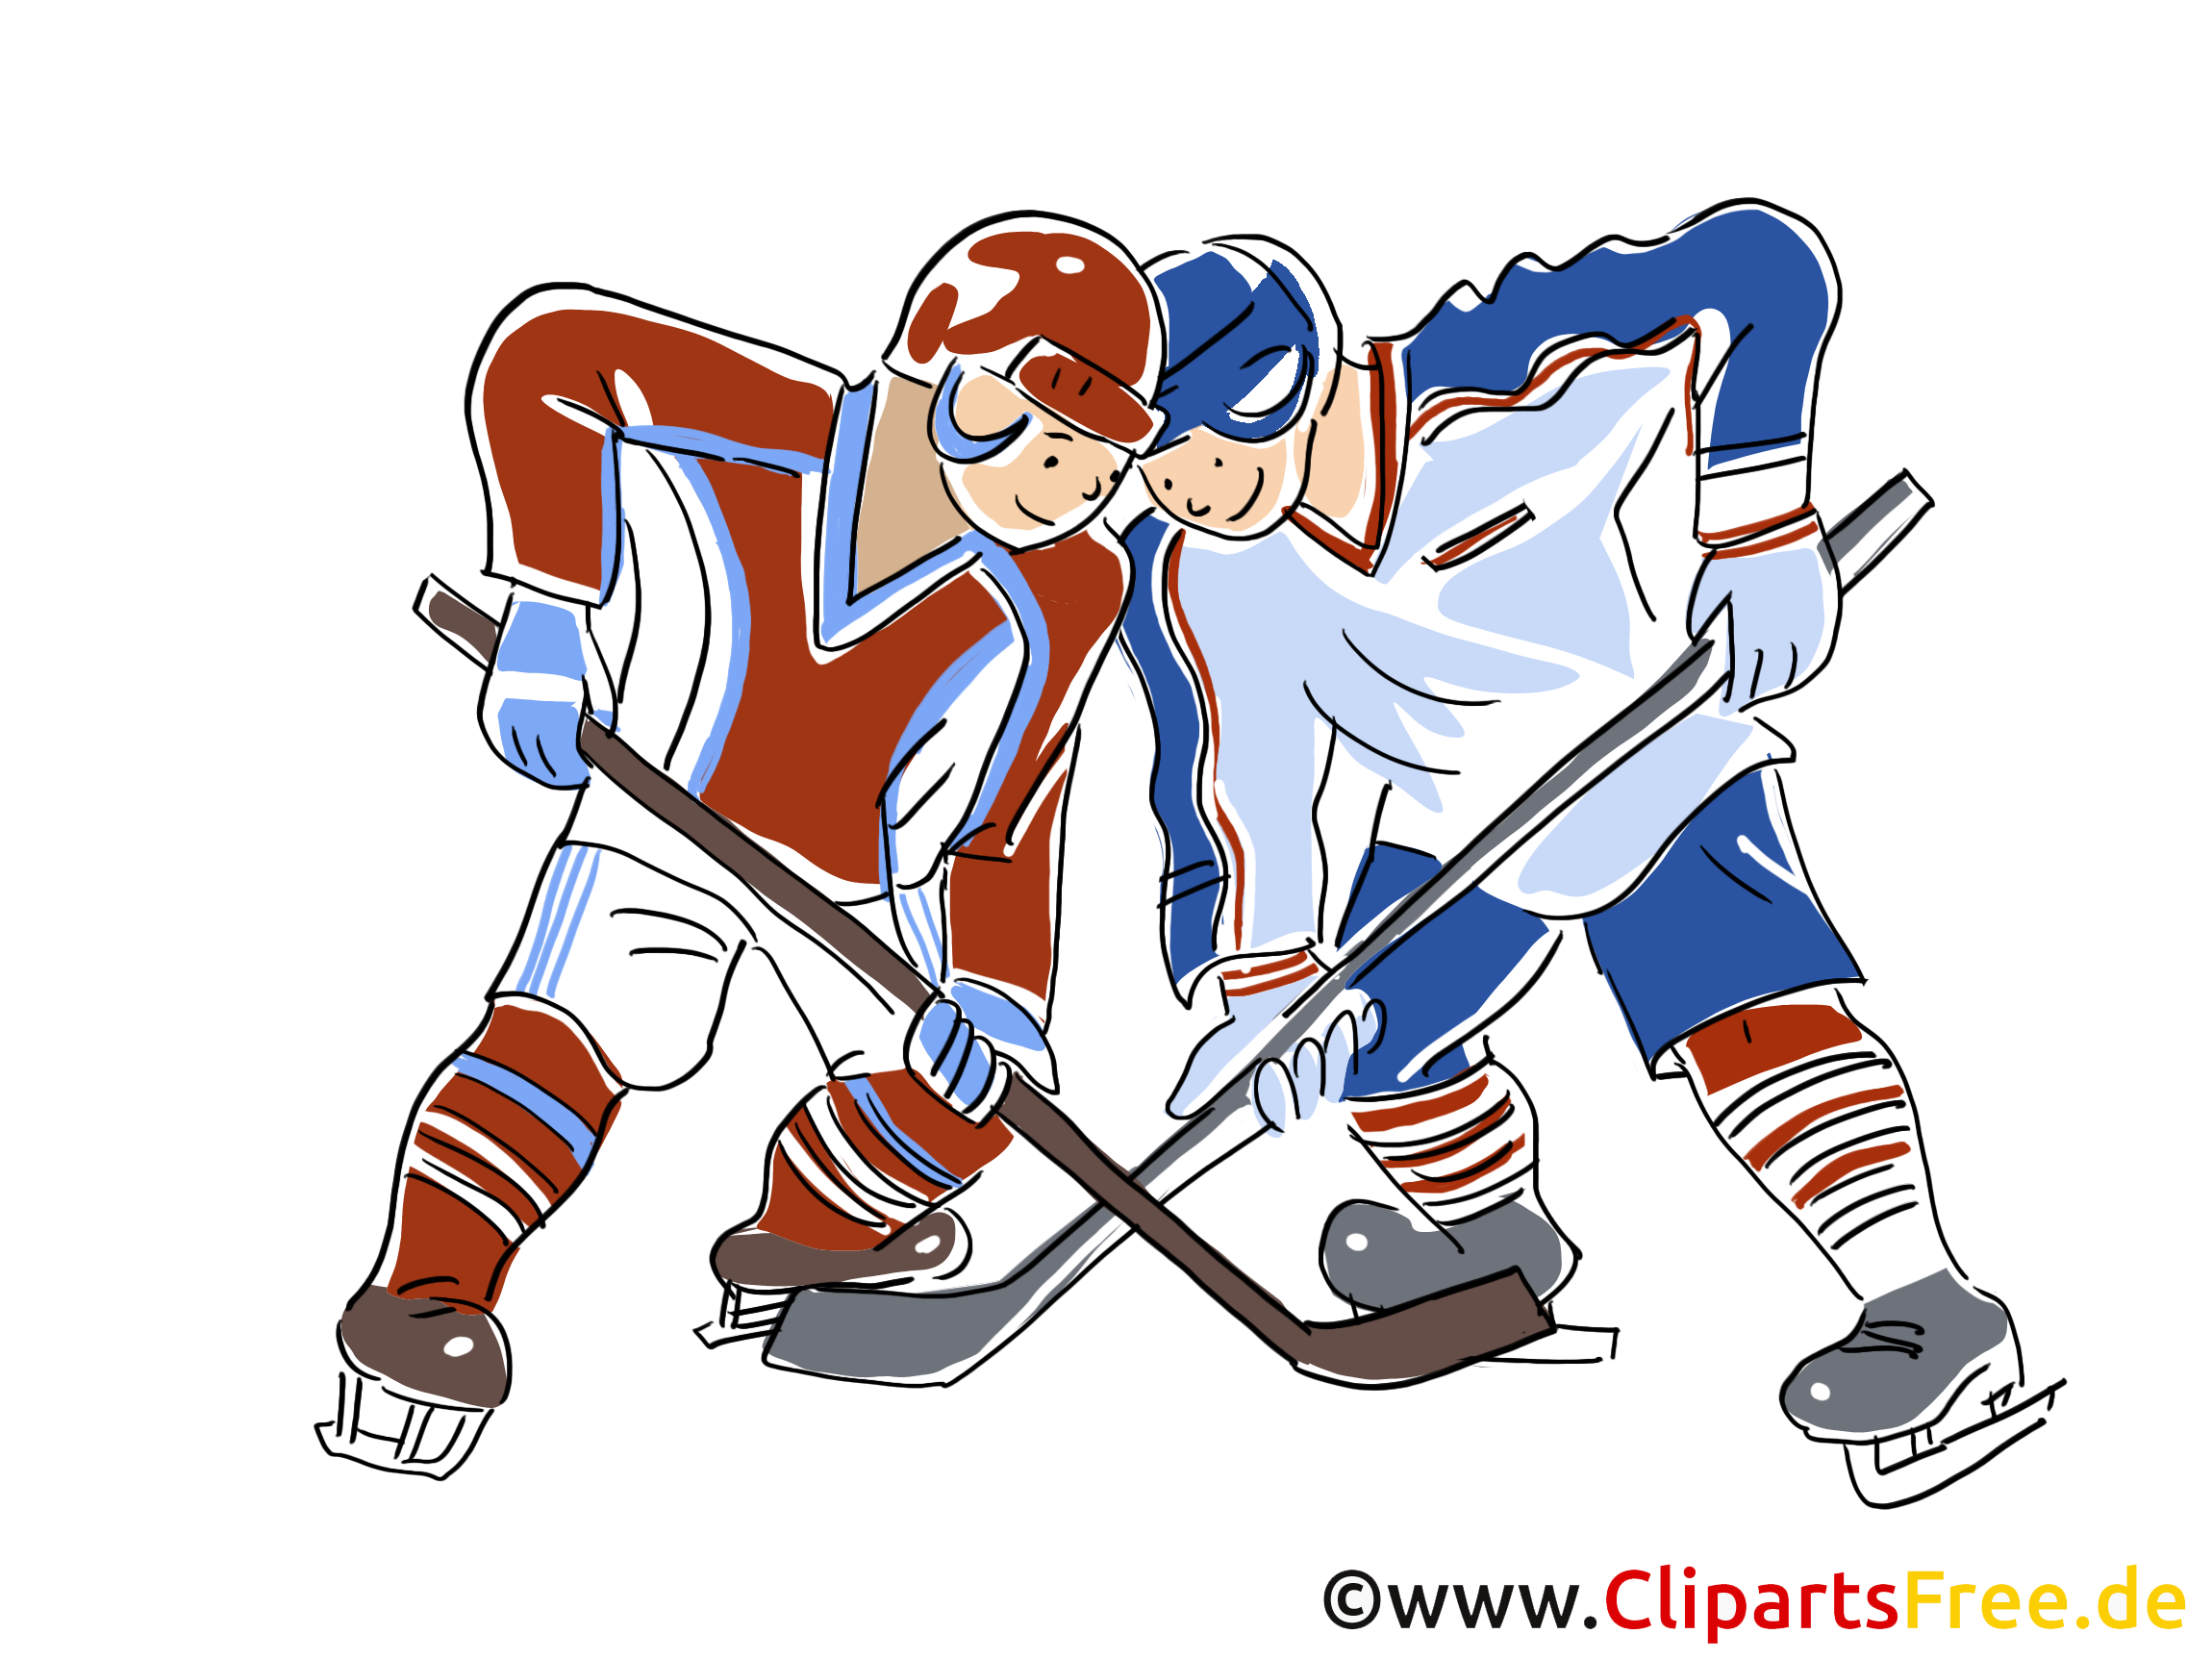 アイスホッケーワールドカップのクリップアート 画像 コミック 漫画 イラスト無料